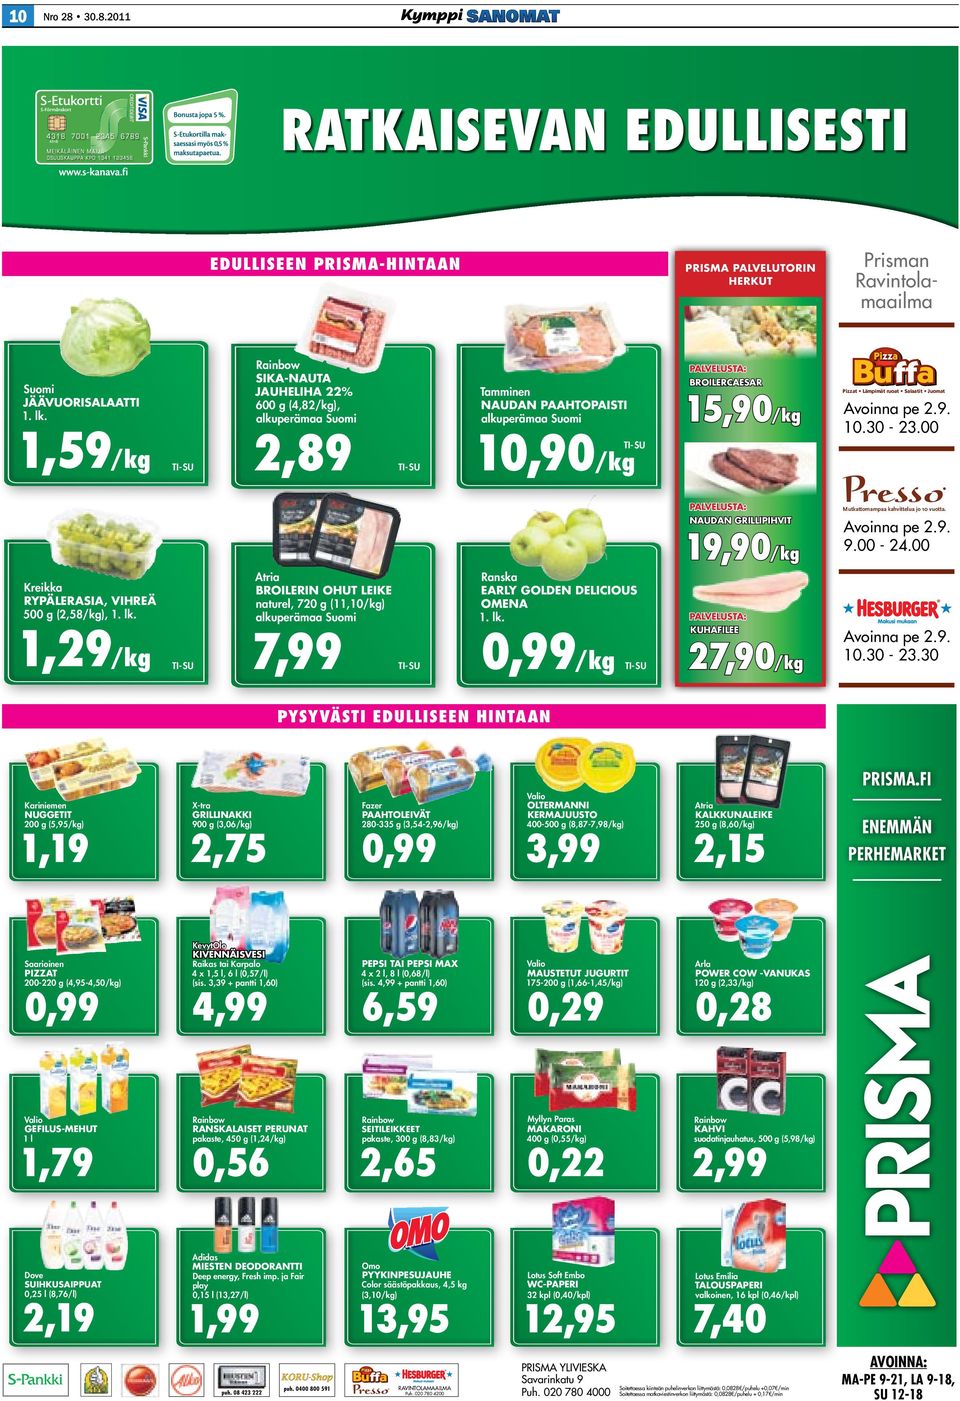 Suomi 7,99 TI- SU Pizzat Lämpimät ruoat Salaatit Juomat Avoinna pe 2.9. 10.30-23.00 TI-SU palvelusta: Kreikka rypälerasia, vihreä 500 g (2,58/kg), 1. lk.